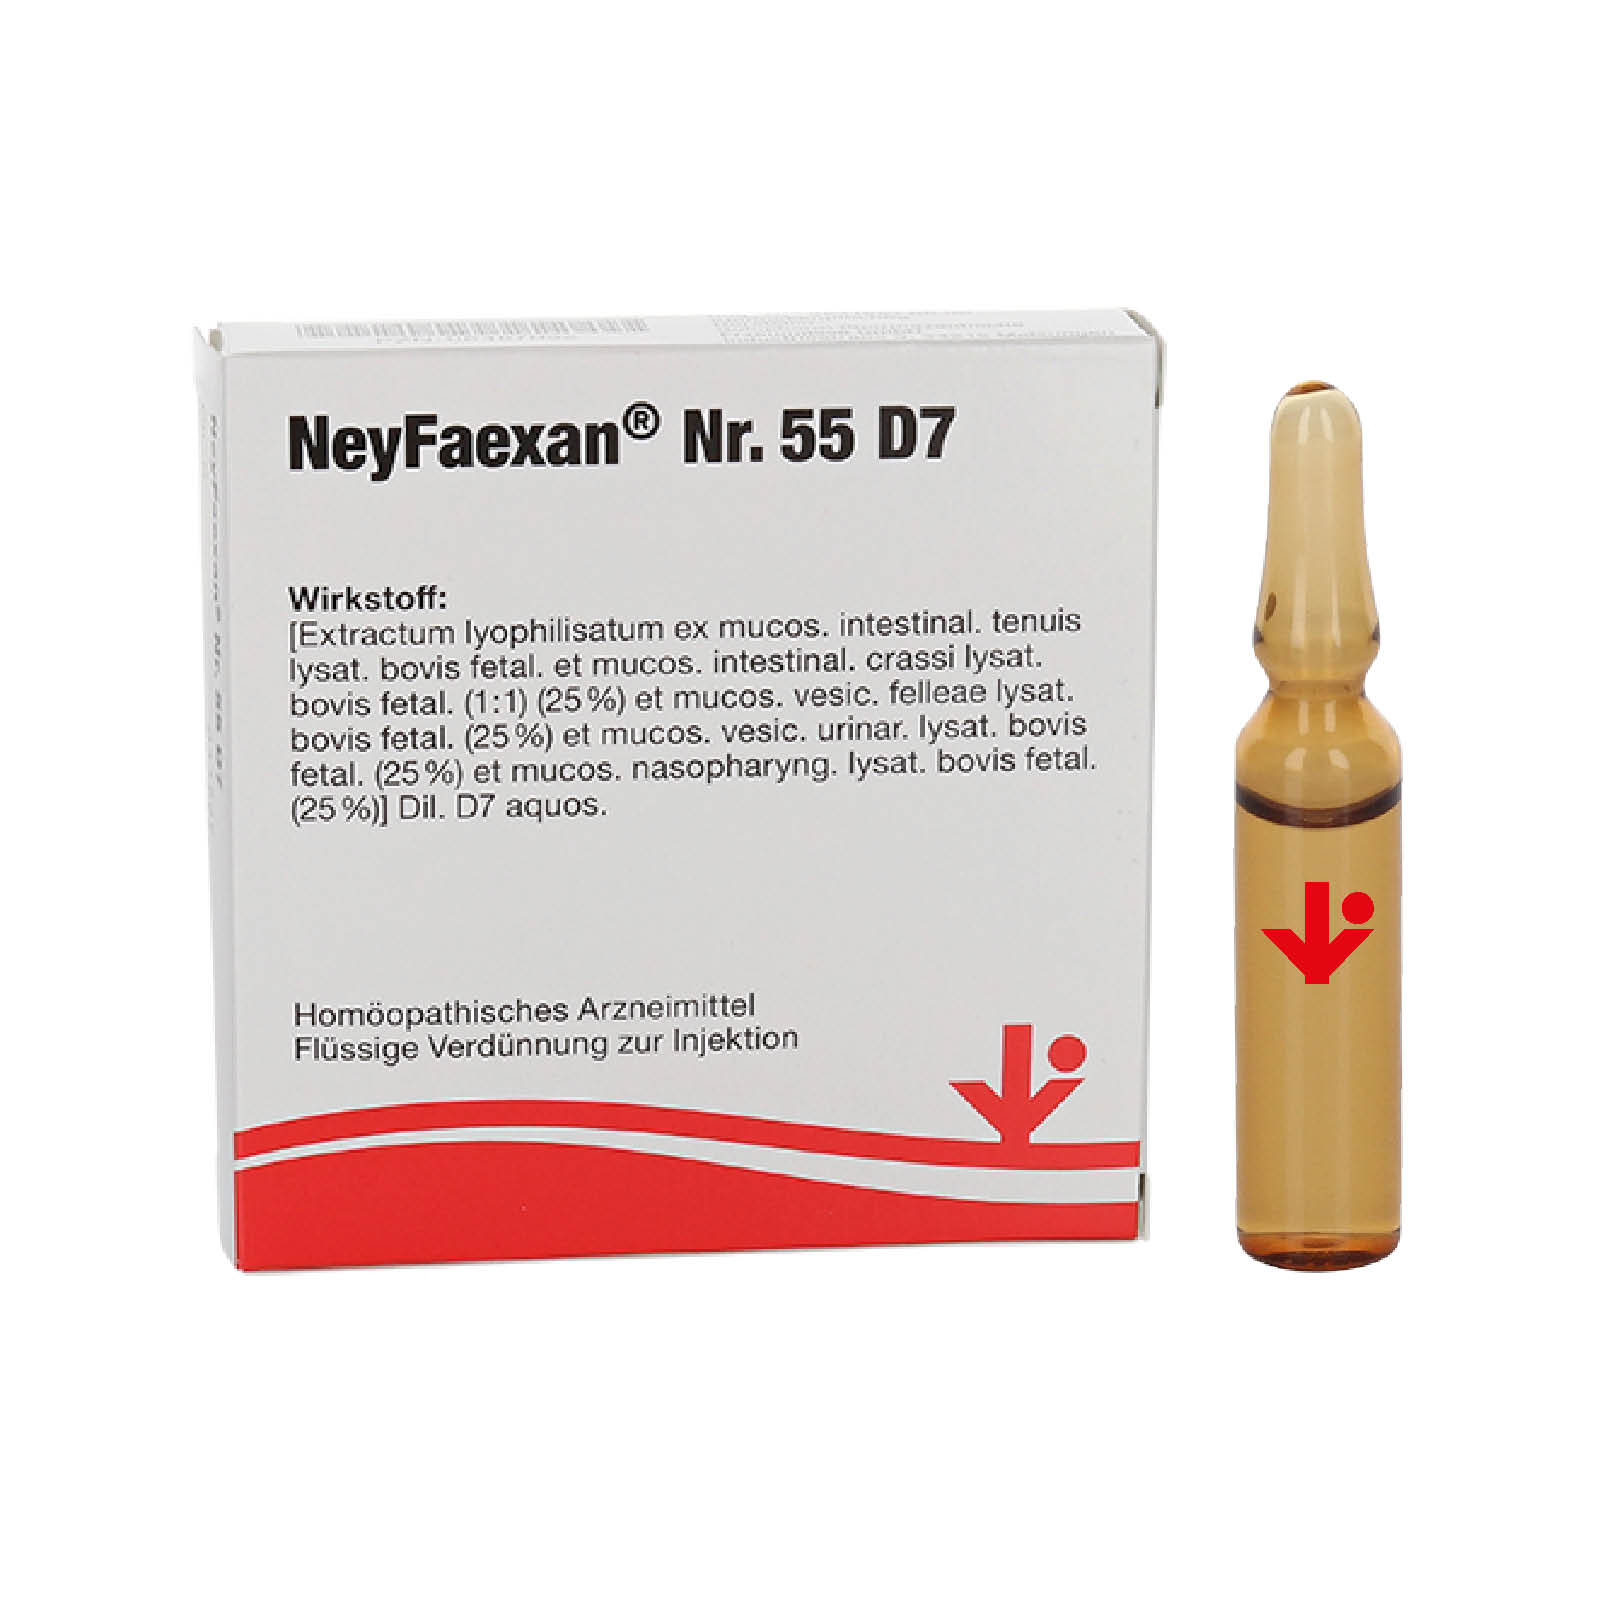 NeyFaexan® Nr. 55 D7